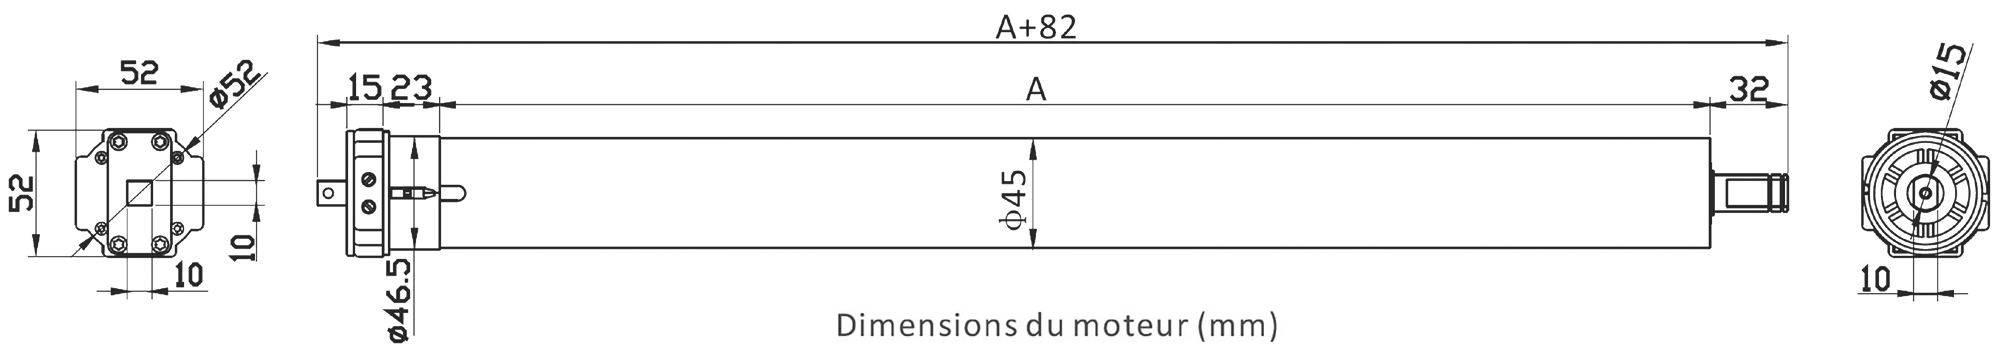 Dimensions moteur AM45